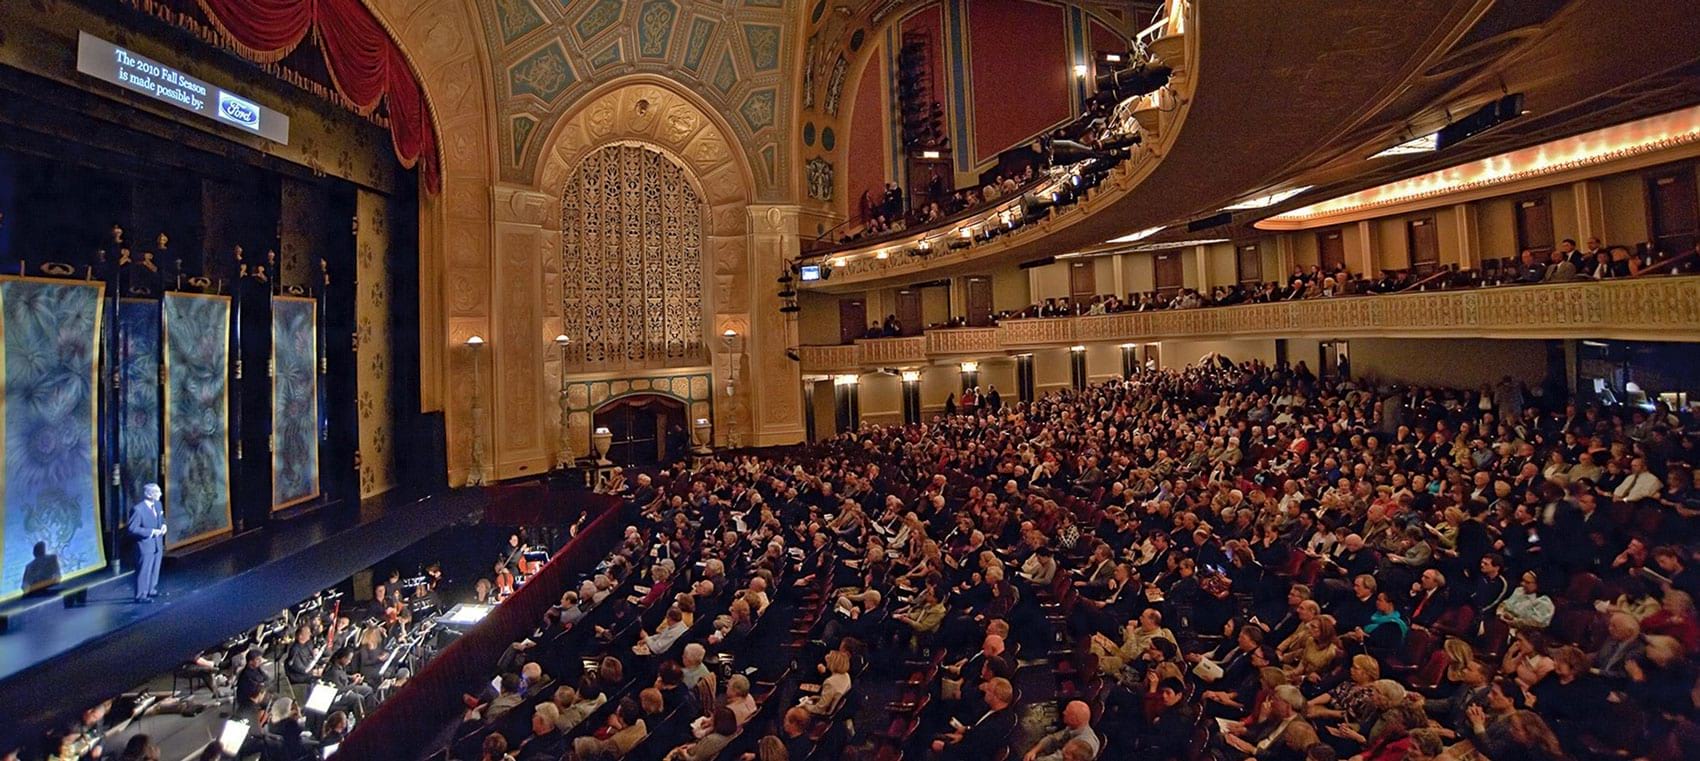 Michigan Opera House Seating Chart